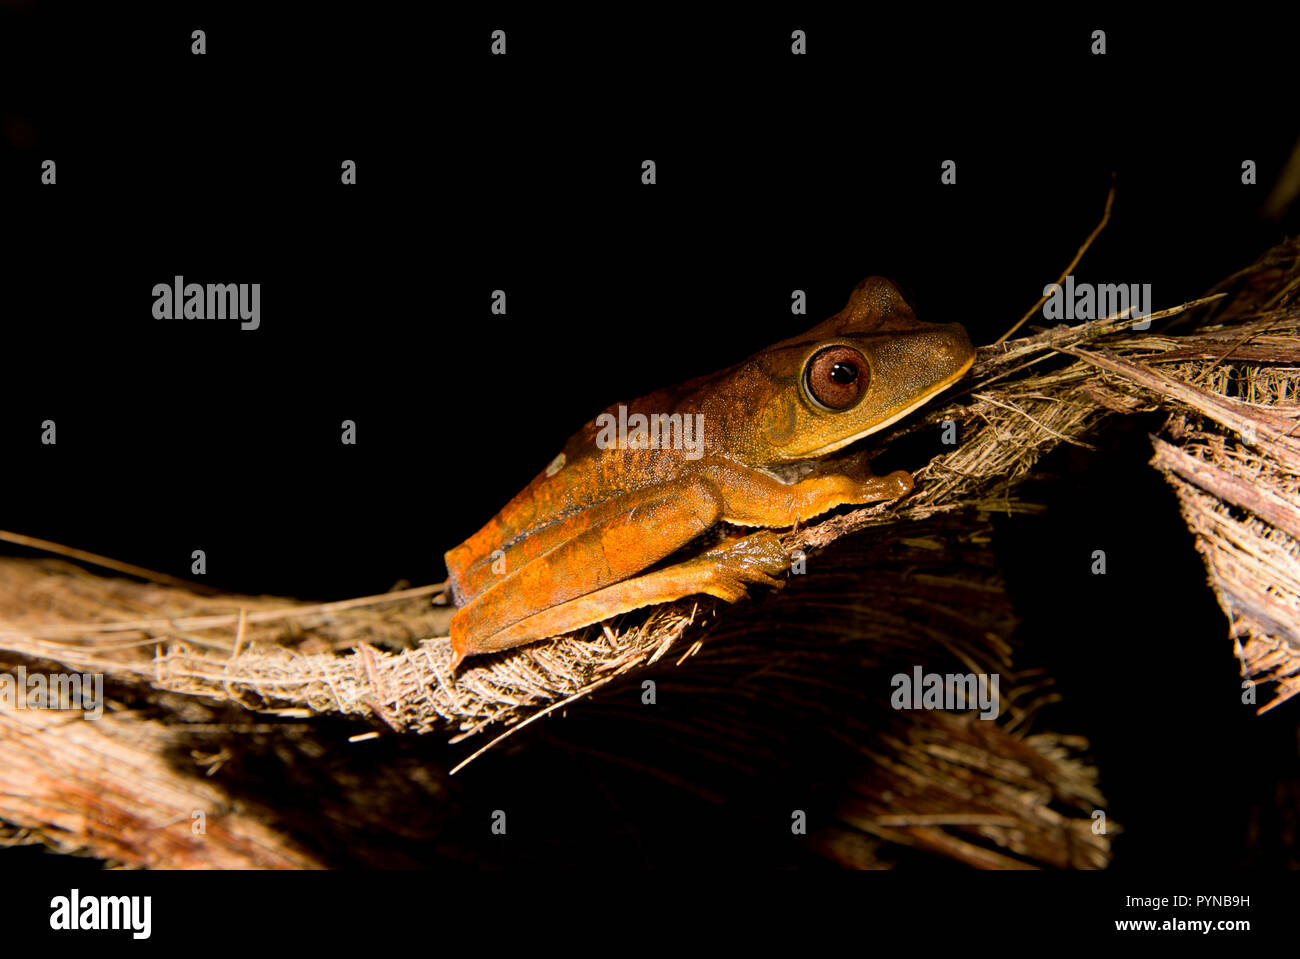 Una rana de árbol fotografiado en las selvas de Surinam cerca Botapassie en el río Surinam. Suriname se destaca por sus bosques tropicales vírgenes y biodive Foto de stock